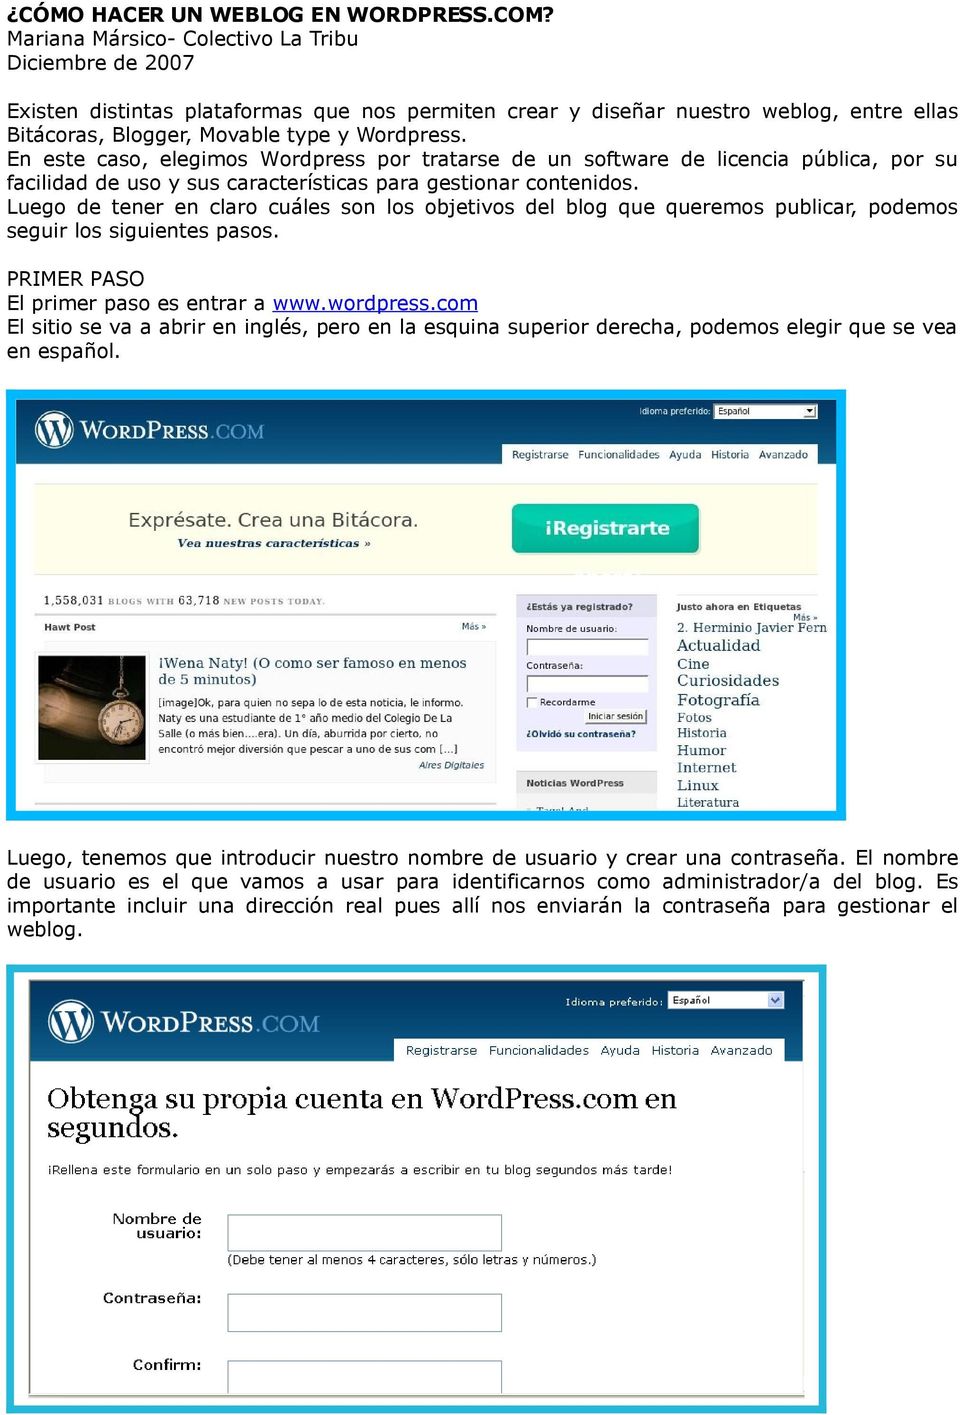 En este caso, elegimos Wordpress por tratarse de un software de licencia pública, por su facilidad de uso y sus características para gestionar contenidos.